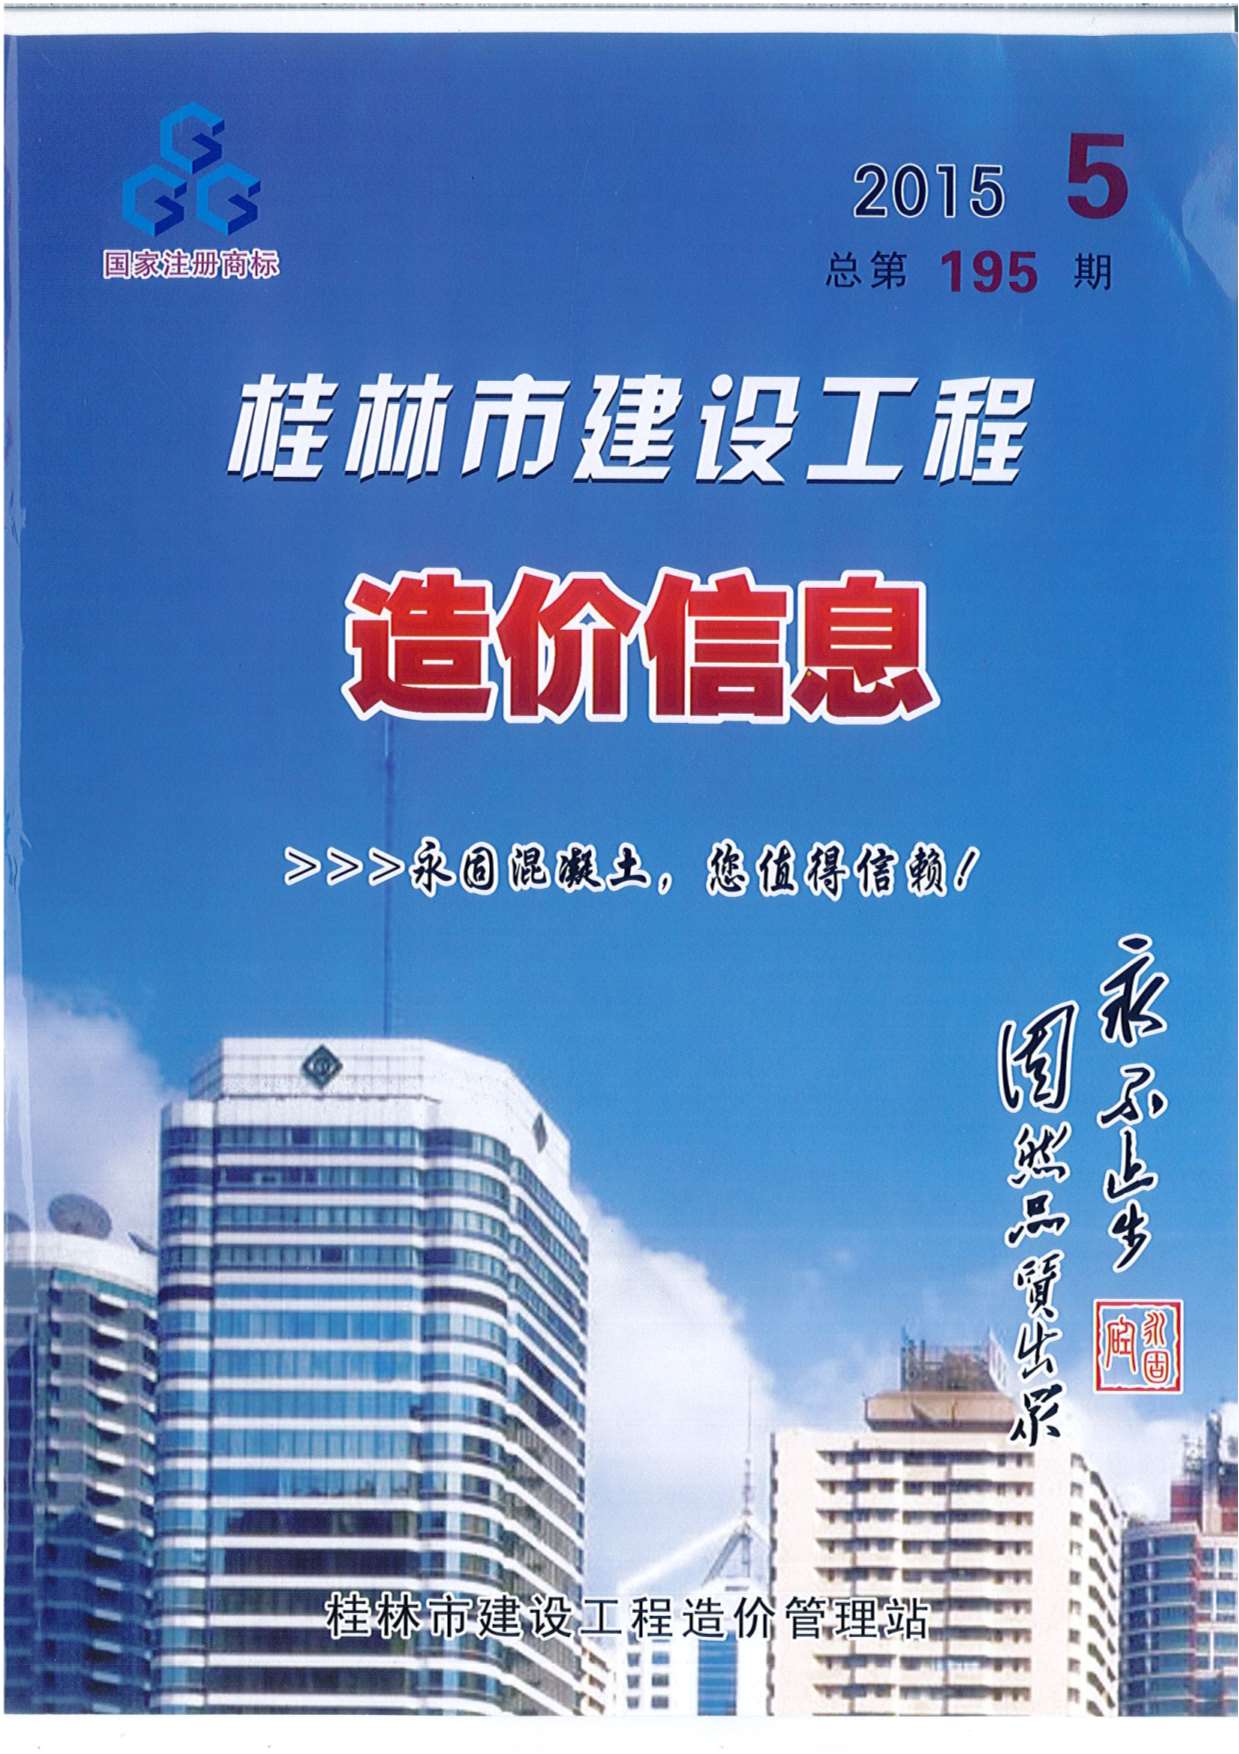 桂林市2015年5月建设工程造价信息